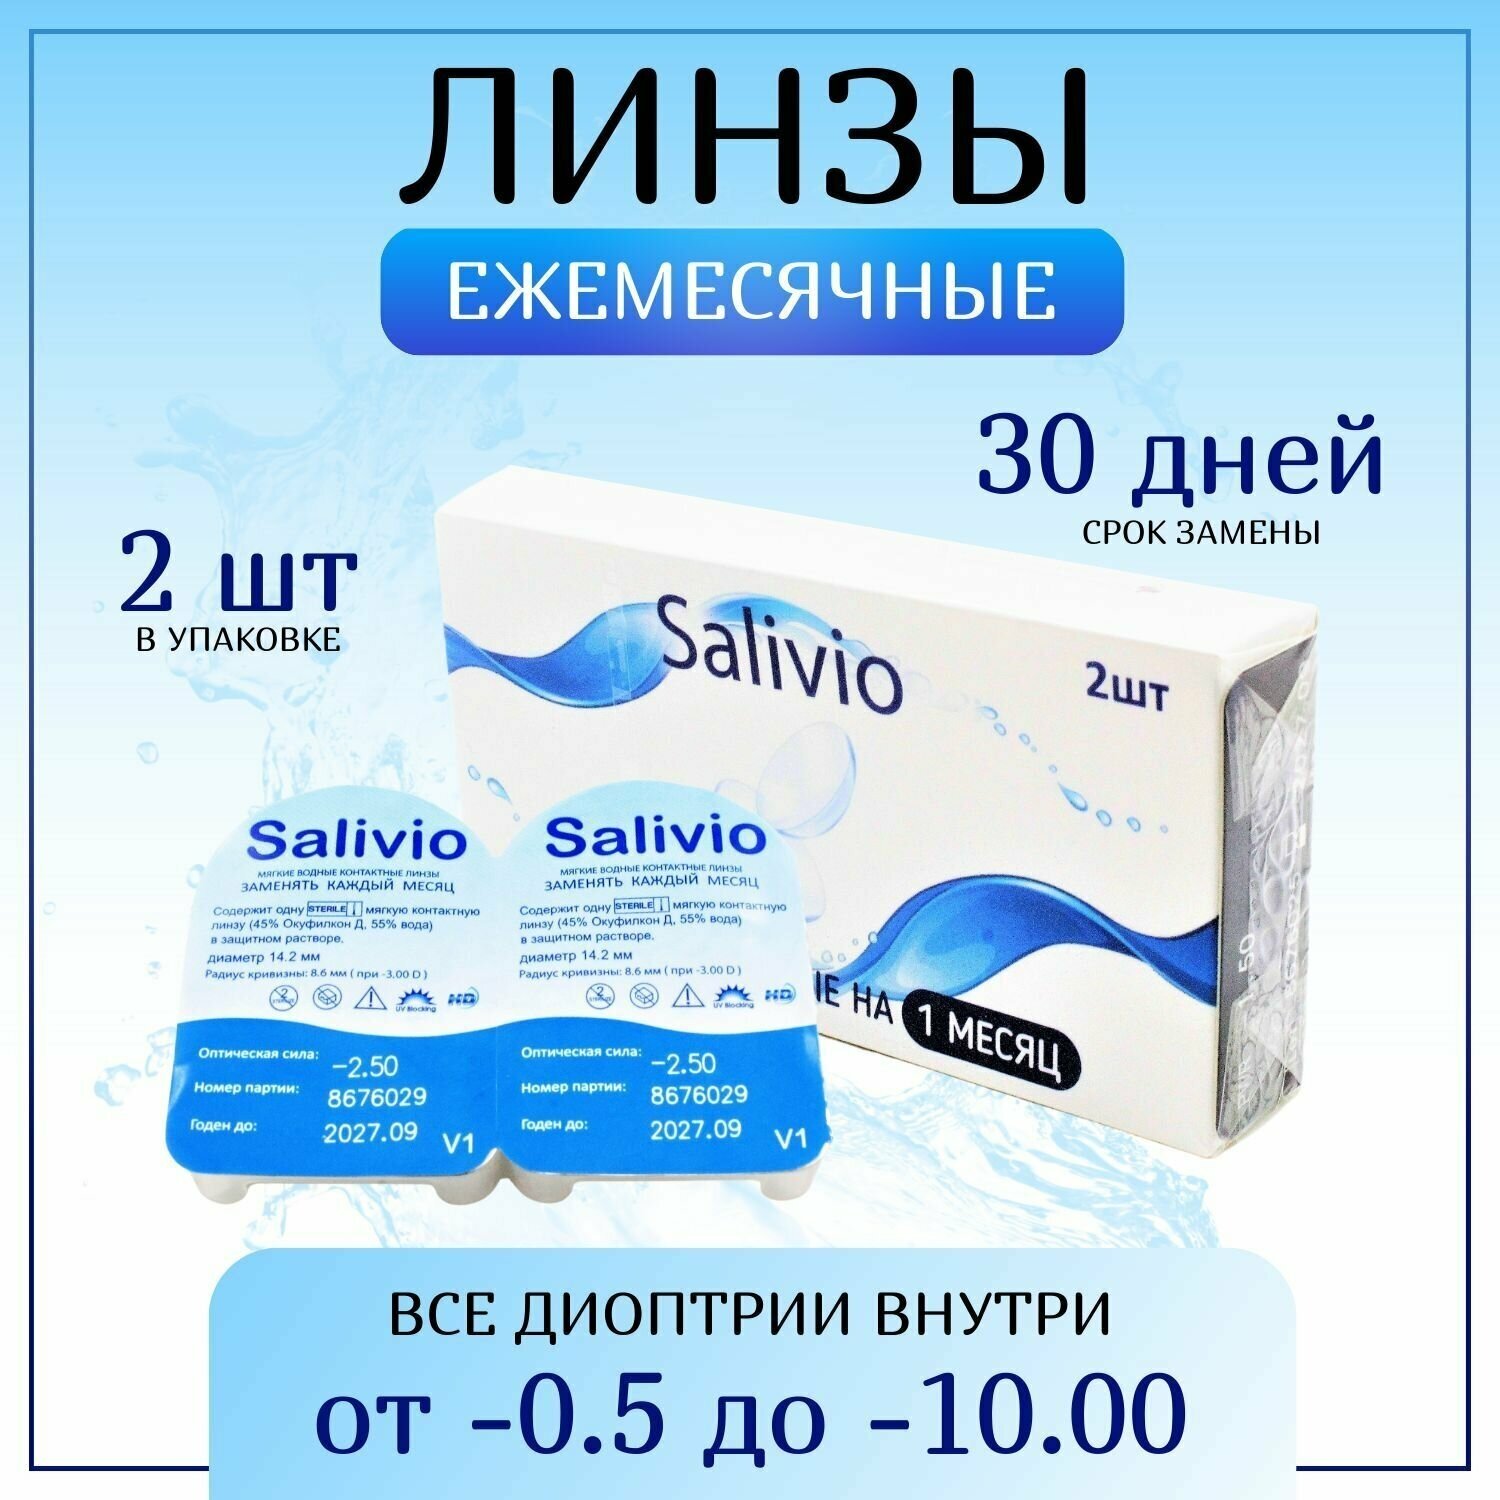 Контактные линзы, SALIVIO, -6,50 ежемесячные (30 дней), 2 штуки, прозрачные